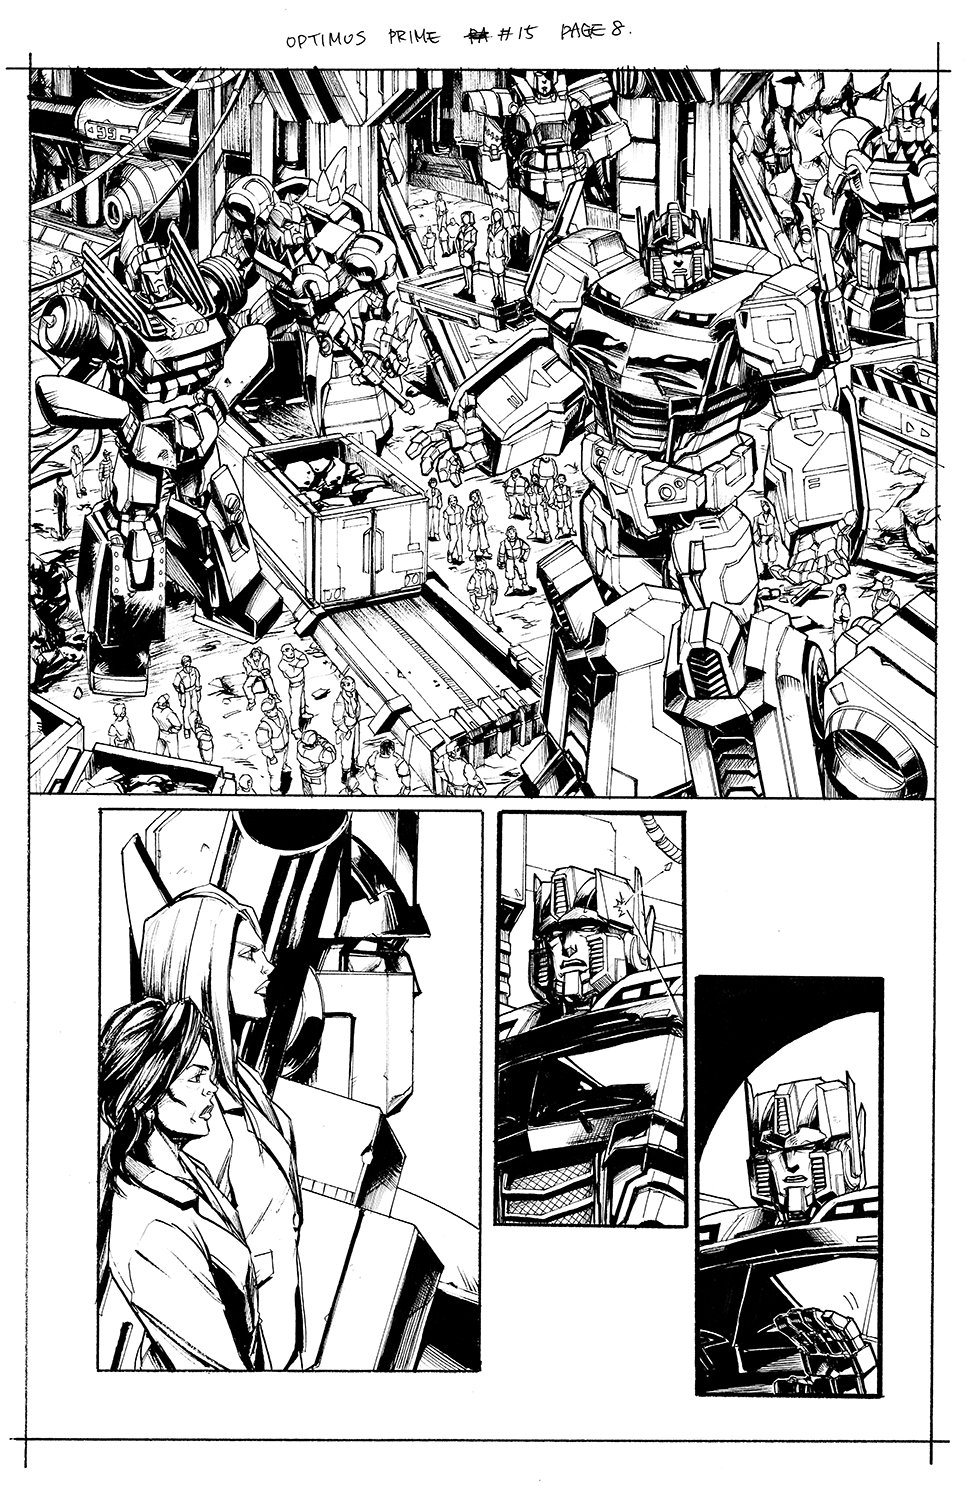 Optimus Prime #15 Page 08